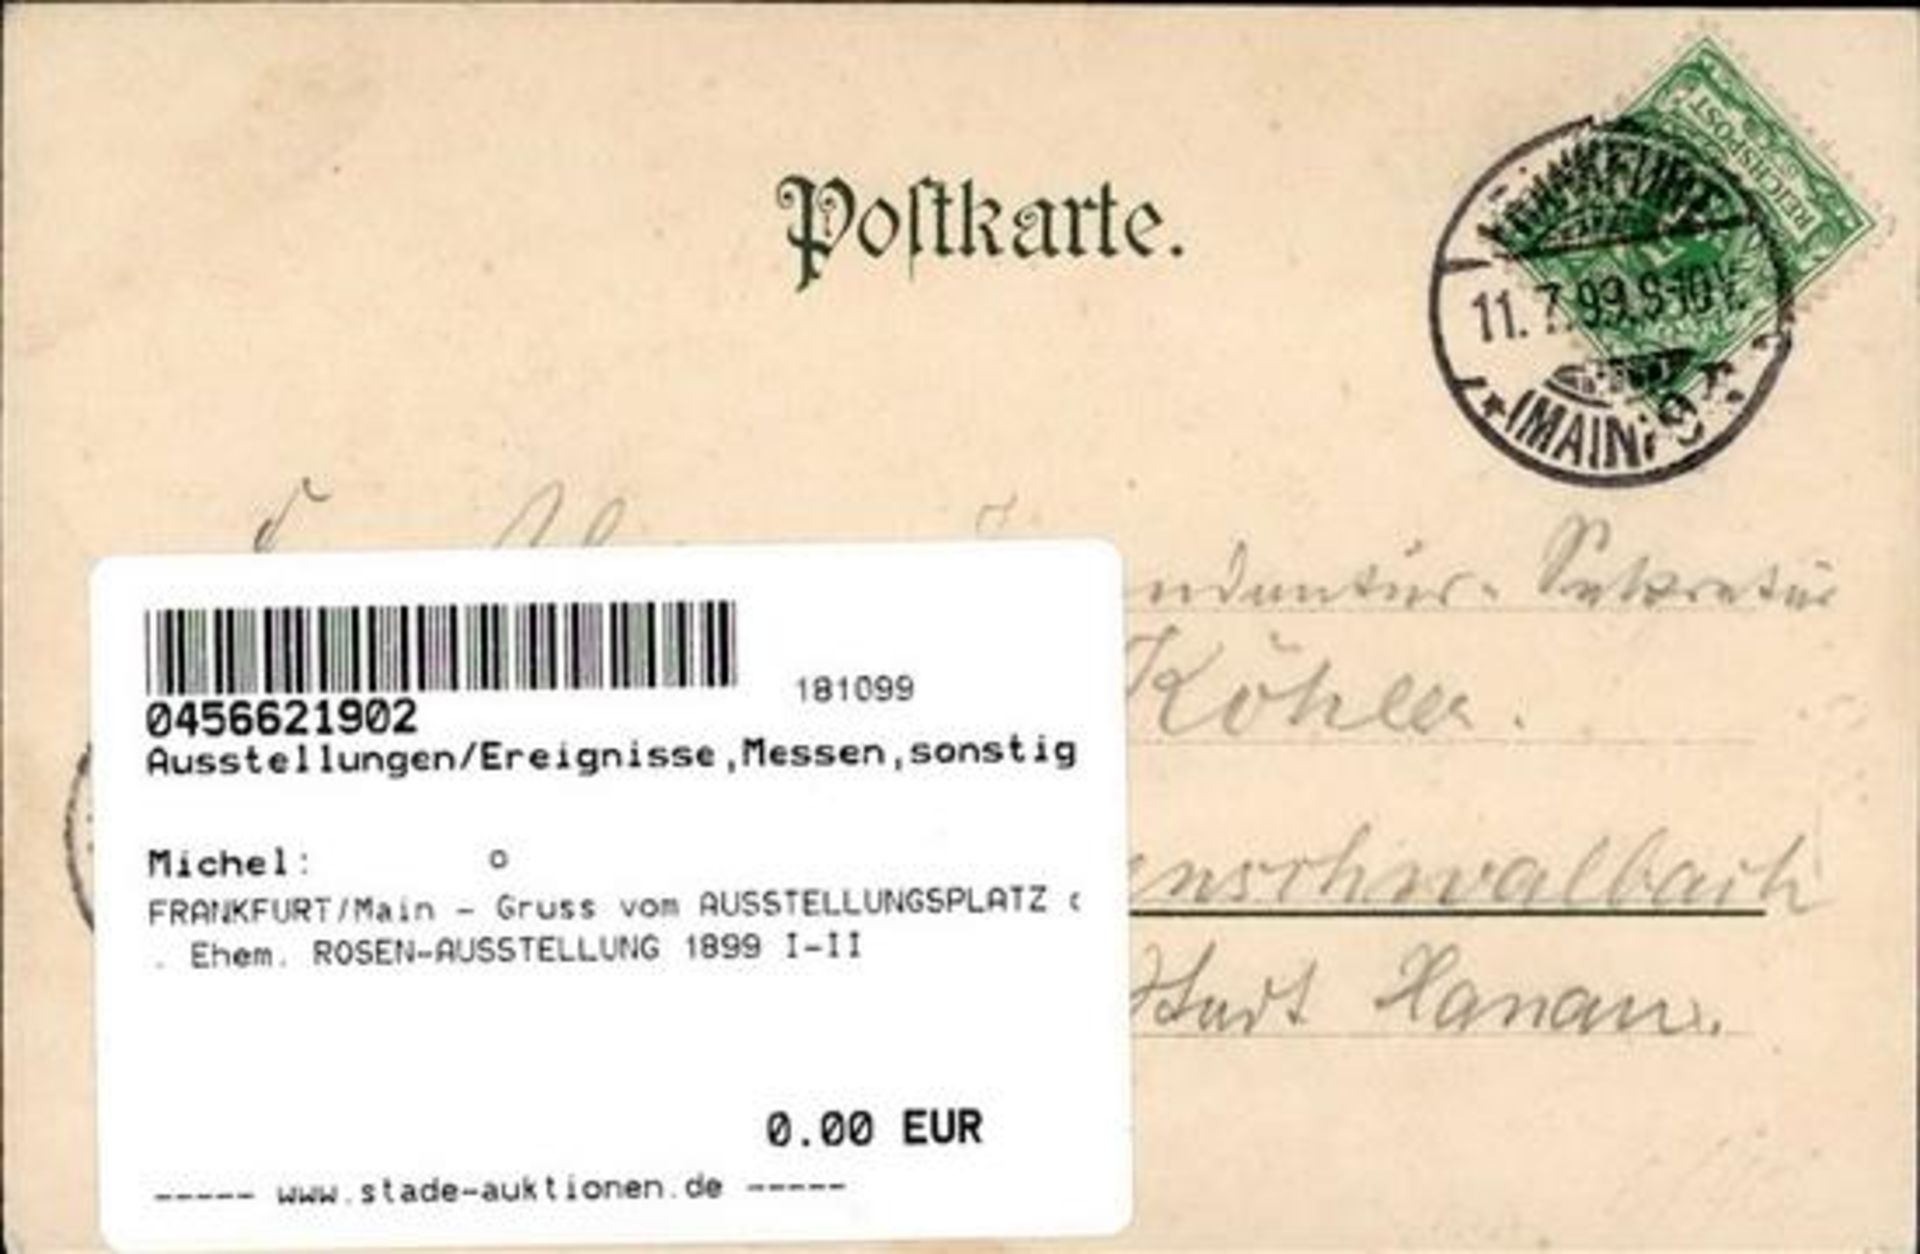 FRANKFURT/Main - Gruss vom AUSSTELLUNGSPLATZ d. Ehem. ROSEN-AUSSTELLUNG 1899 I-II - Bild 2 aus 2